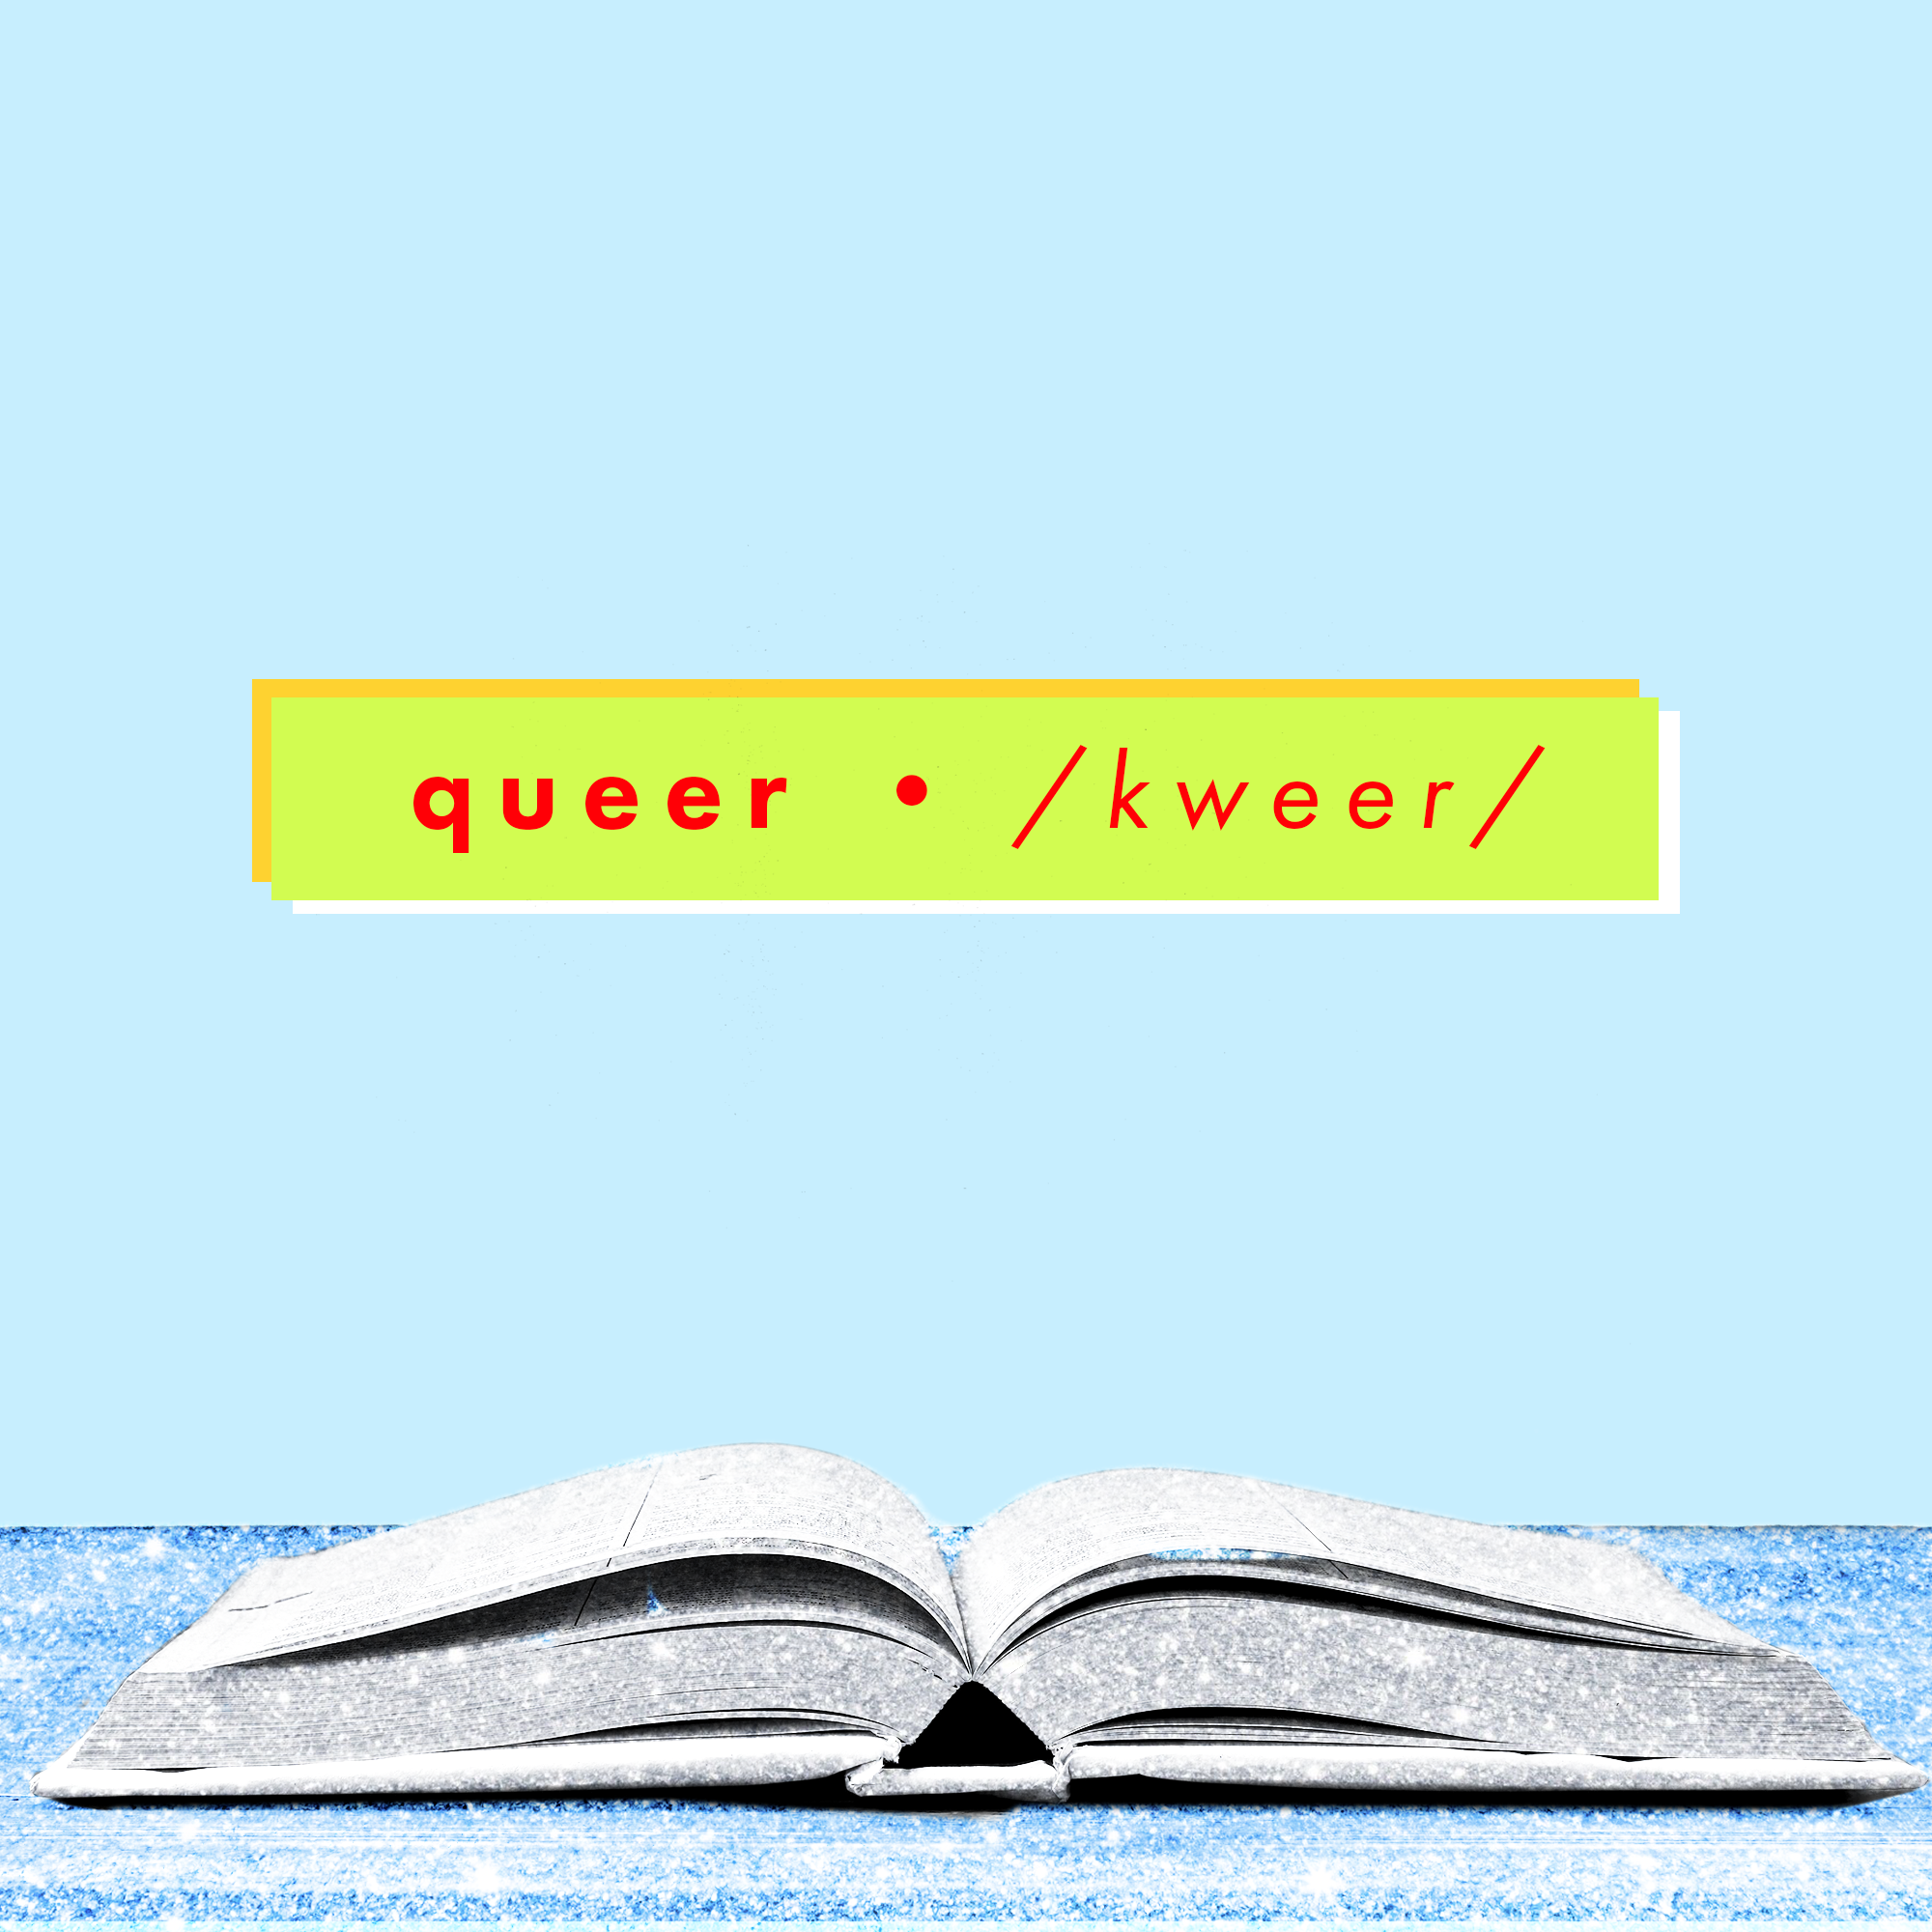 queer vs gay definition